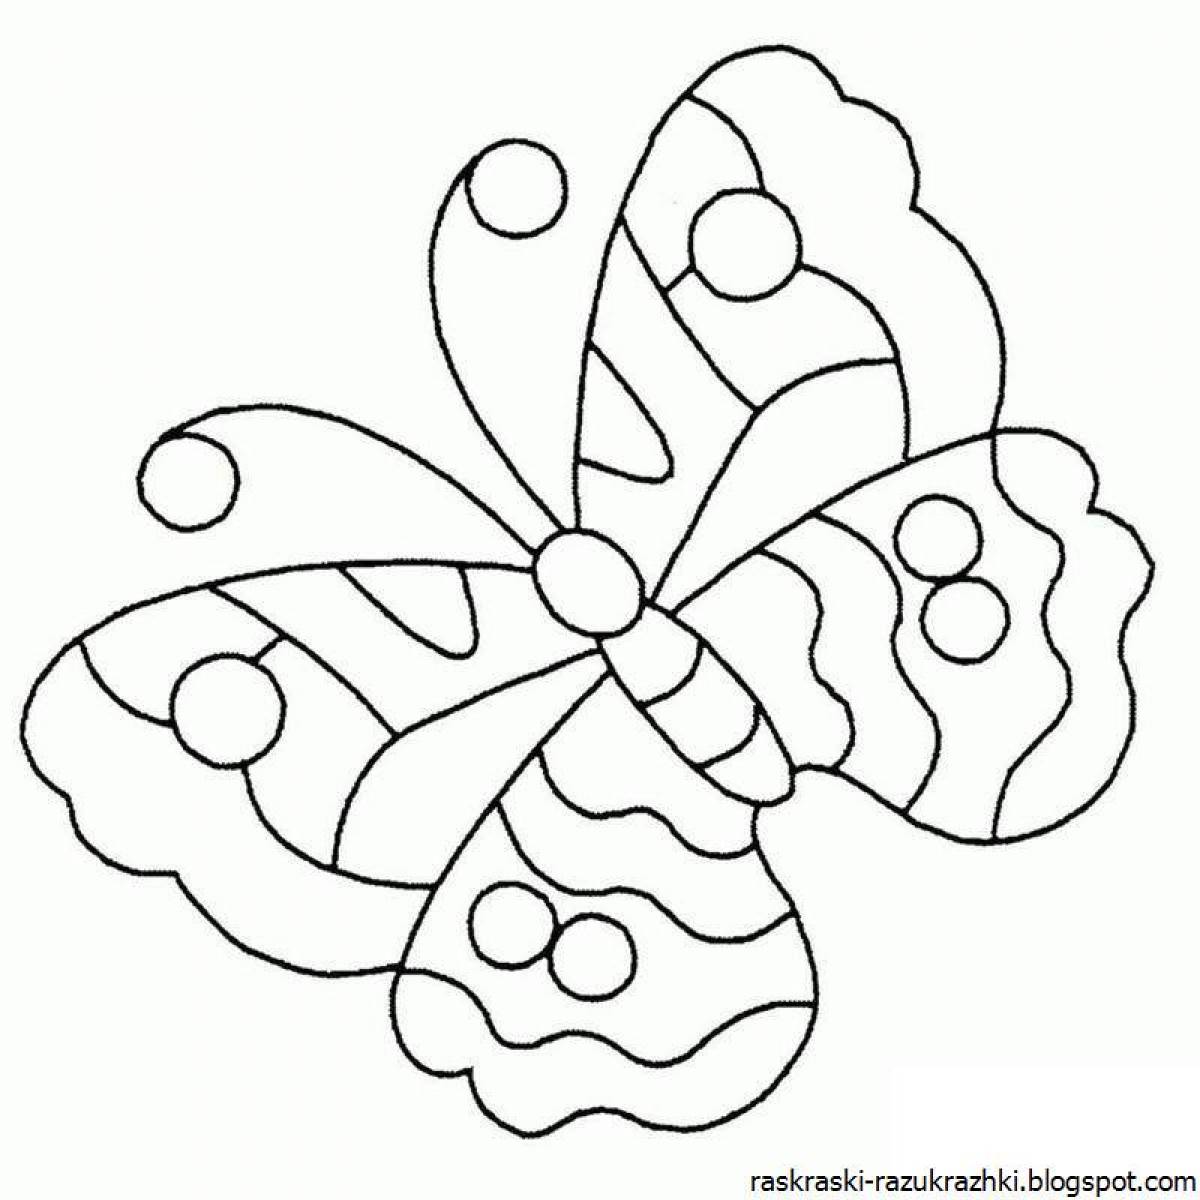 Забавная раскраска бабочки для детей 3-4 лет